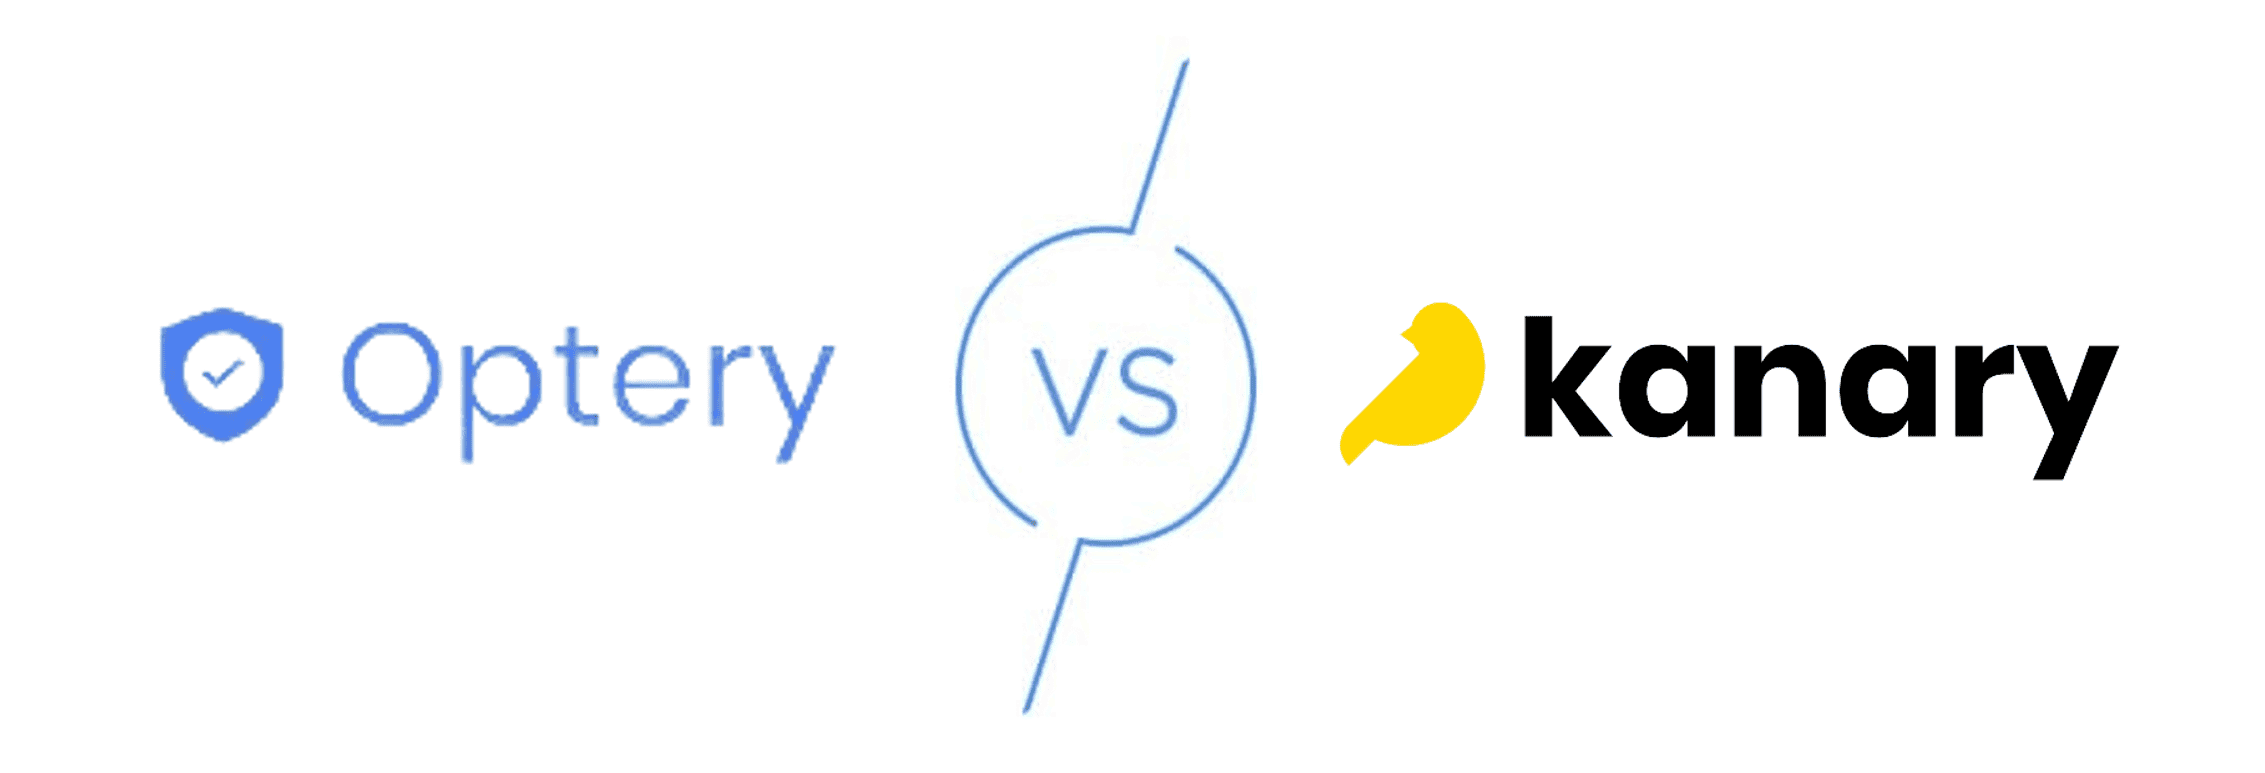 Optery vs Kanary